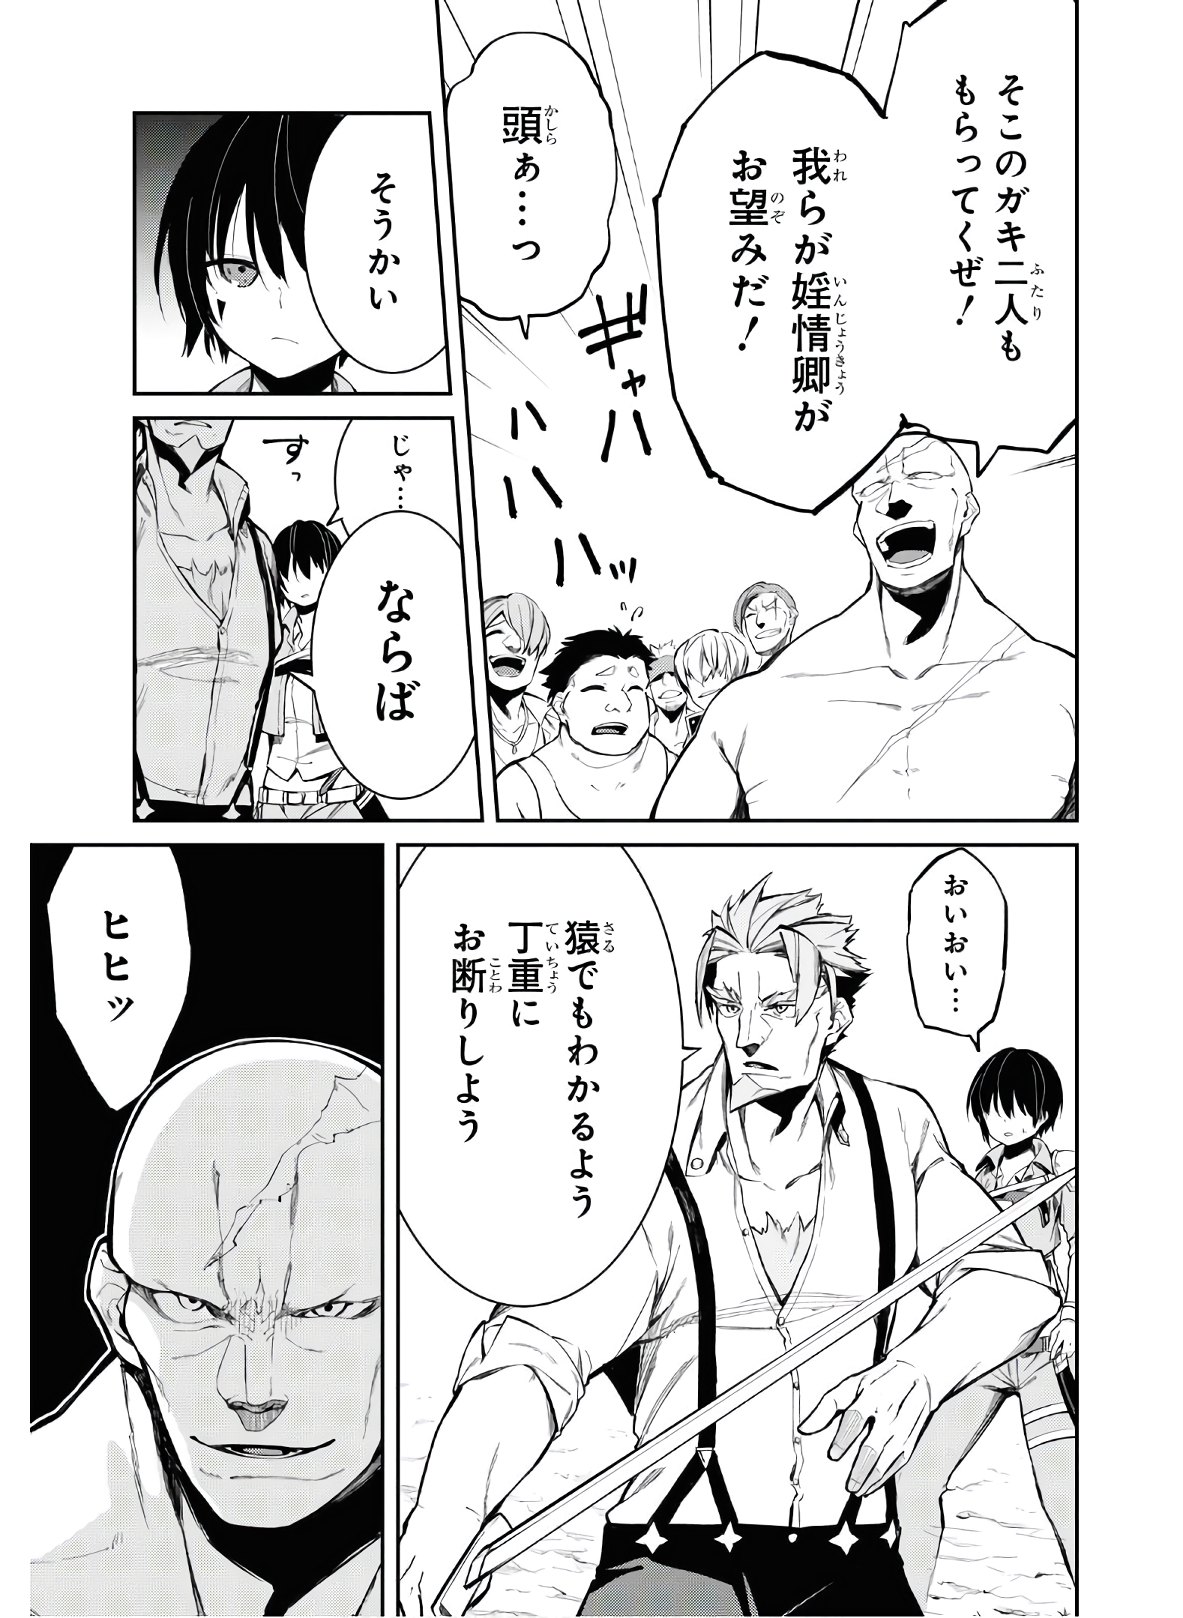 Maryoku 0 de Saikyou no Daikenja ~Sore wa Mahou dewa Nai, Butsuri da!~ - Chapter 4 - Page 7